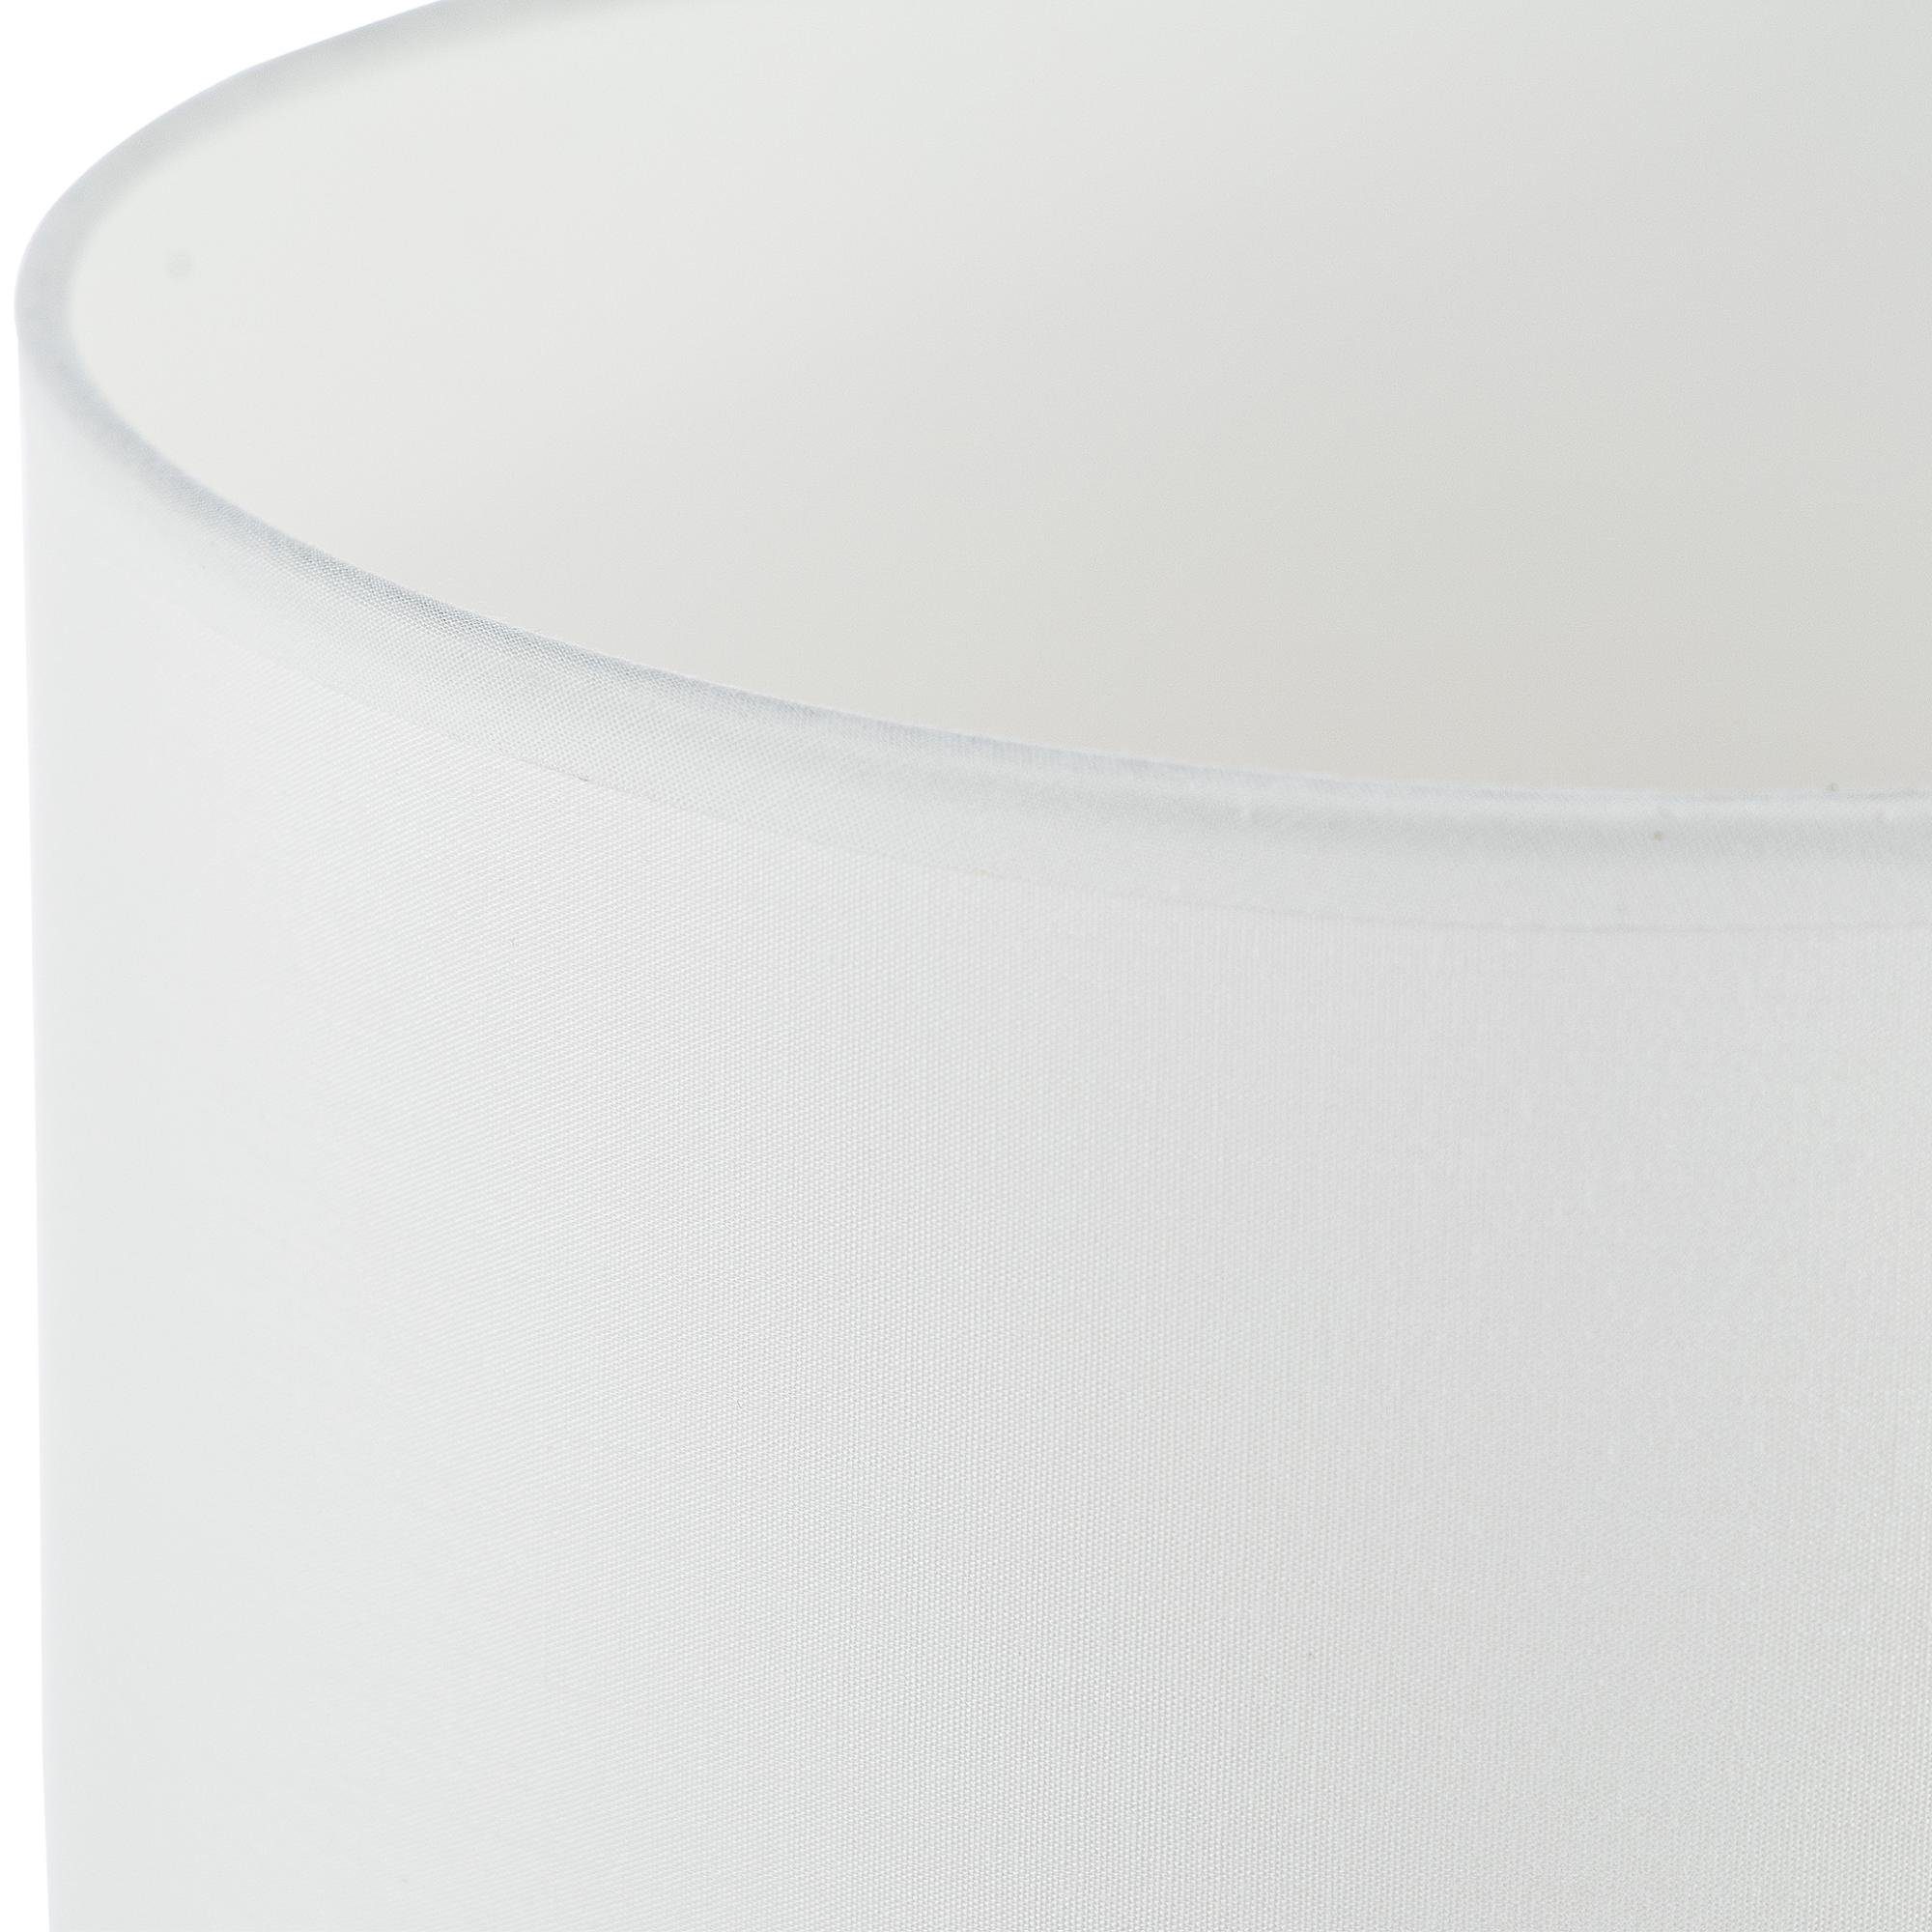 Konsimo Tischleuchte STIVUS jedem Passt Keramiksockel, Tischleuchten, weiß Stück Dekor, ohne 2 Leuchtmittel, zu